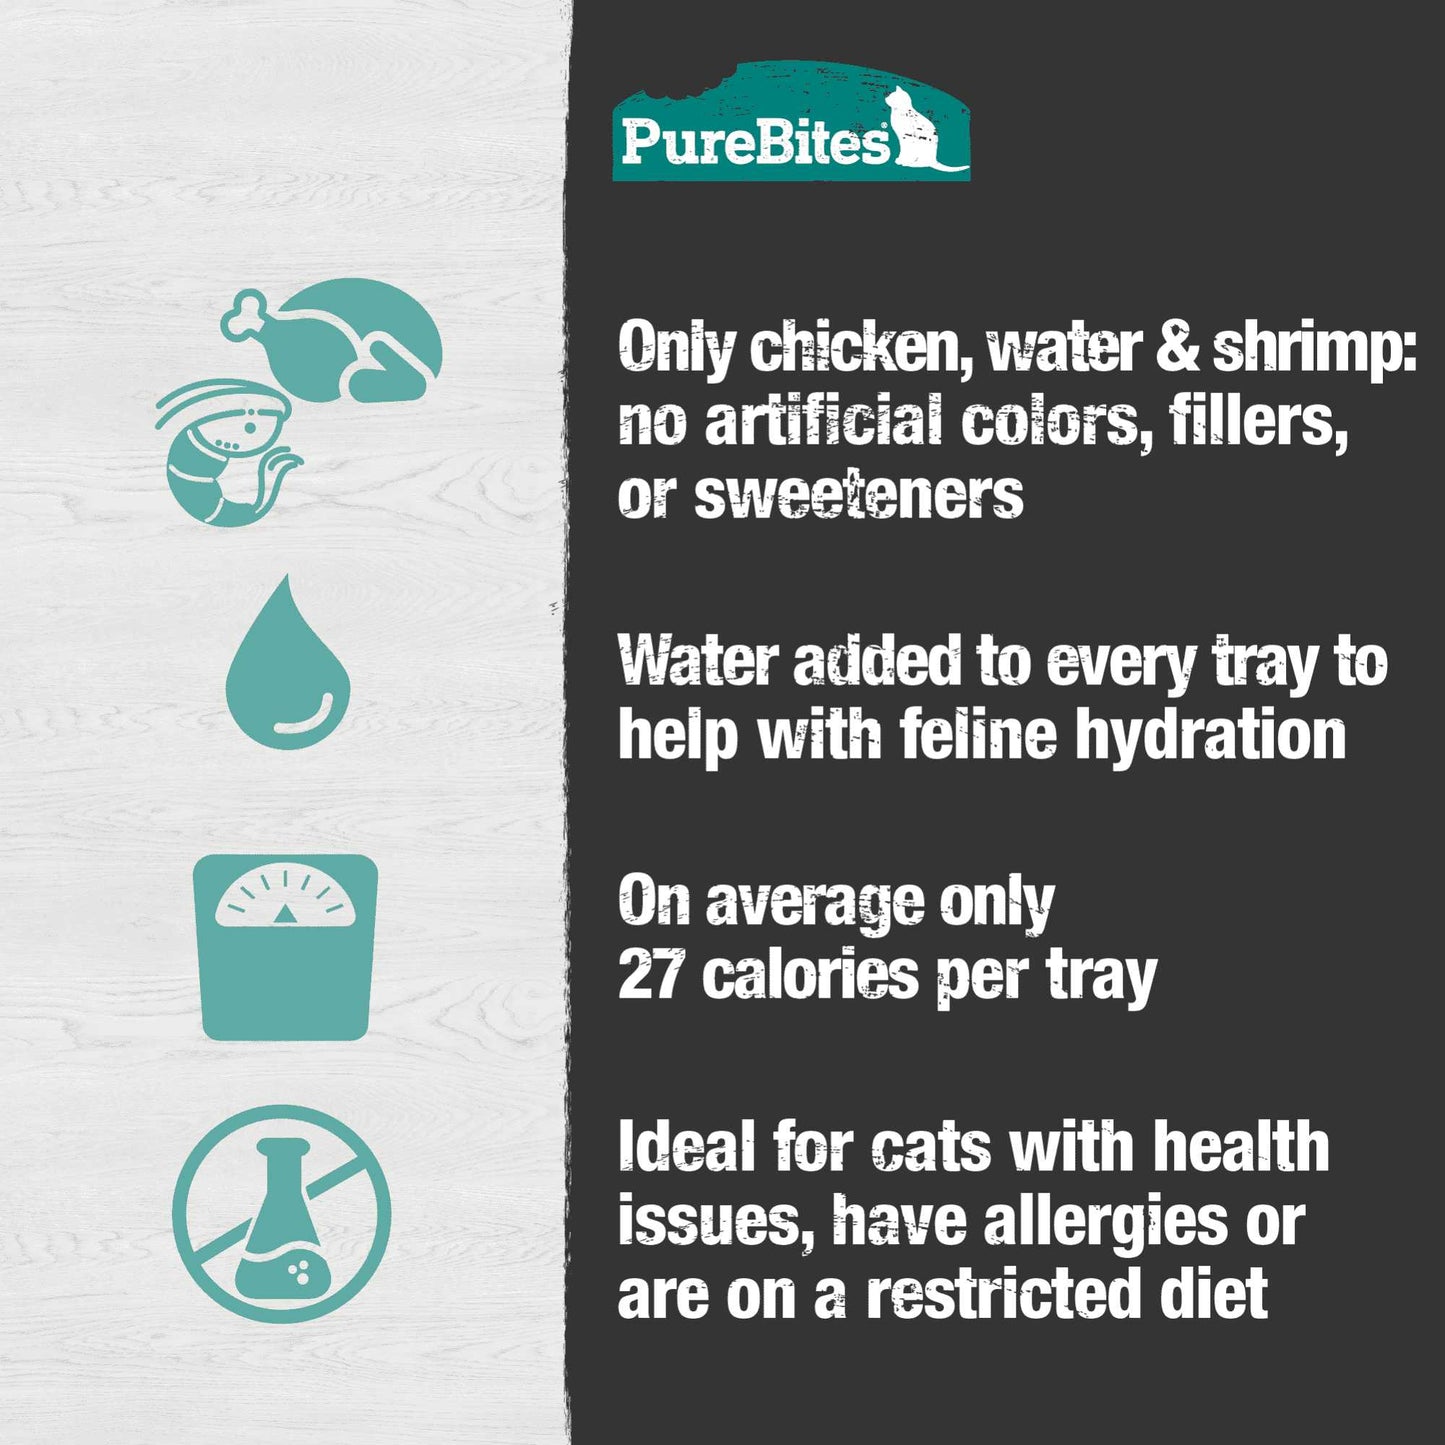 PureBites Mixers Chicken Breast & Wild Ocean Shrimp in Water Cat Food 12 / 1.76 oz Pure Treats